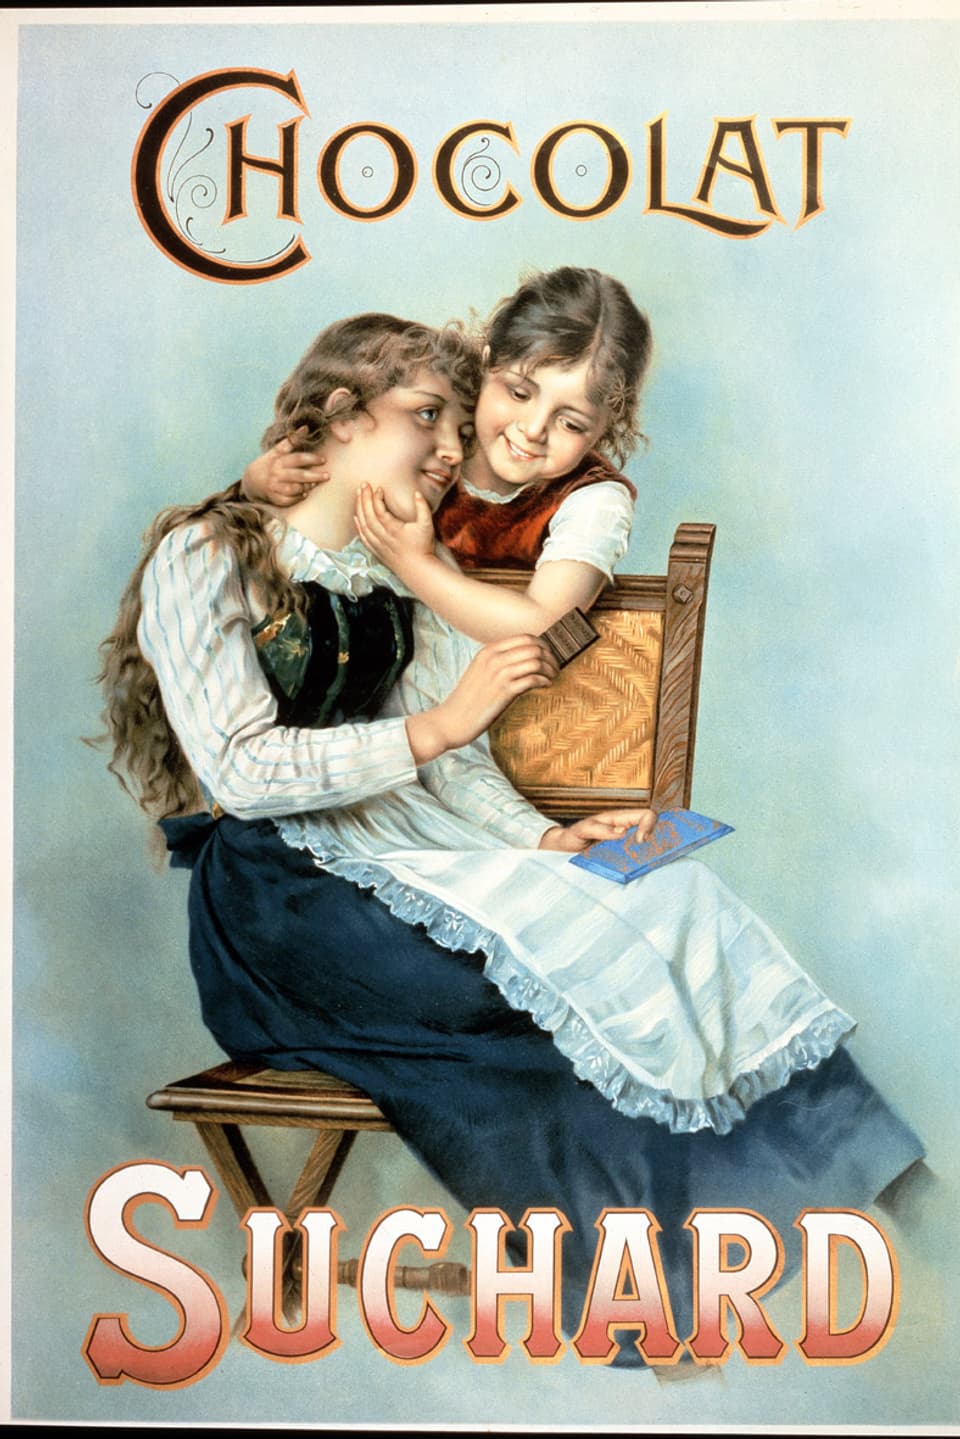 Ein Werbeplakat für Suchard-Schokolade um 1900